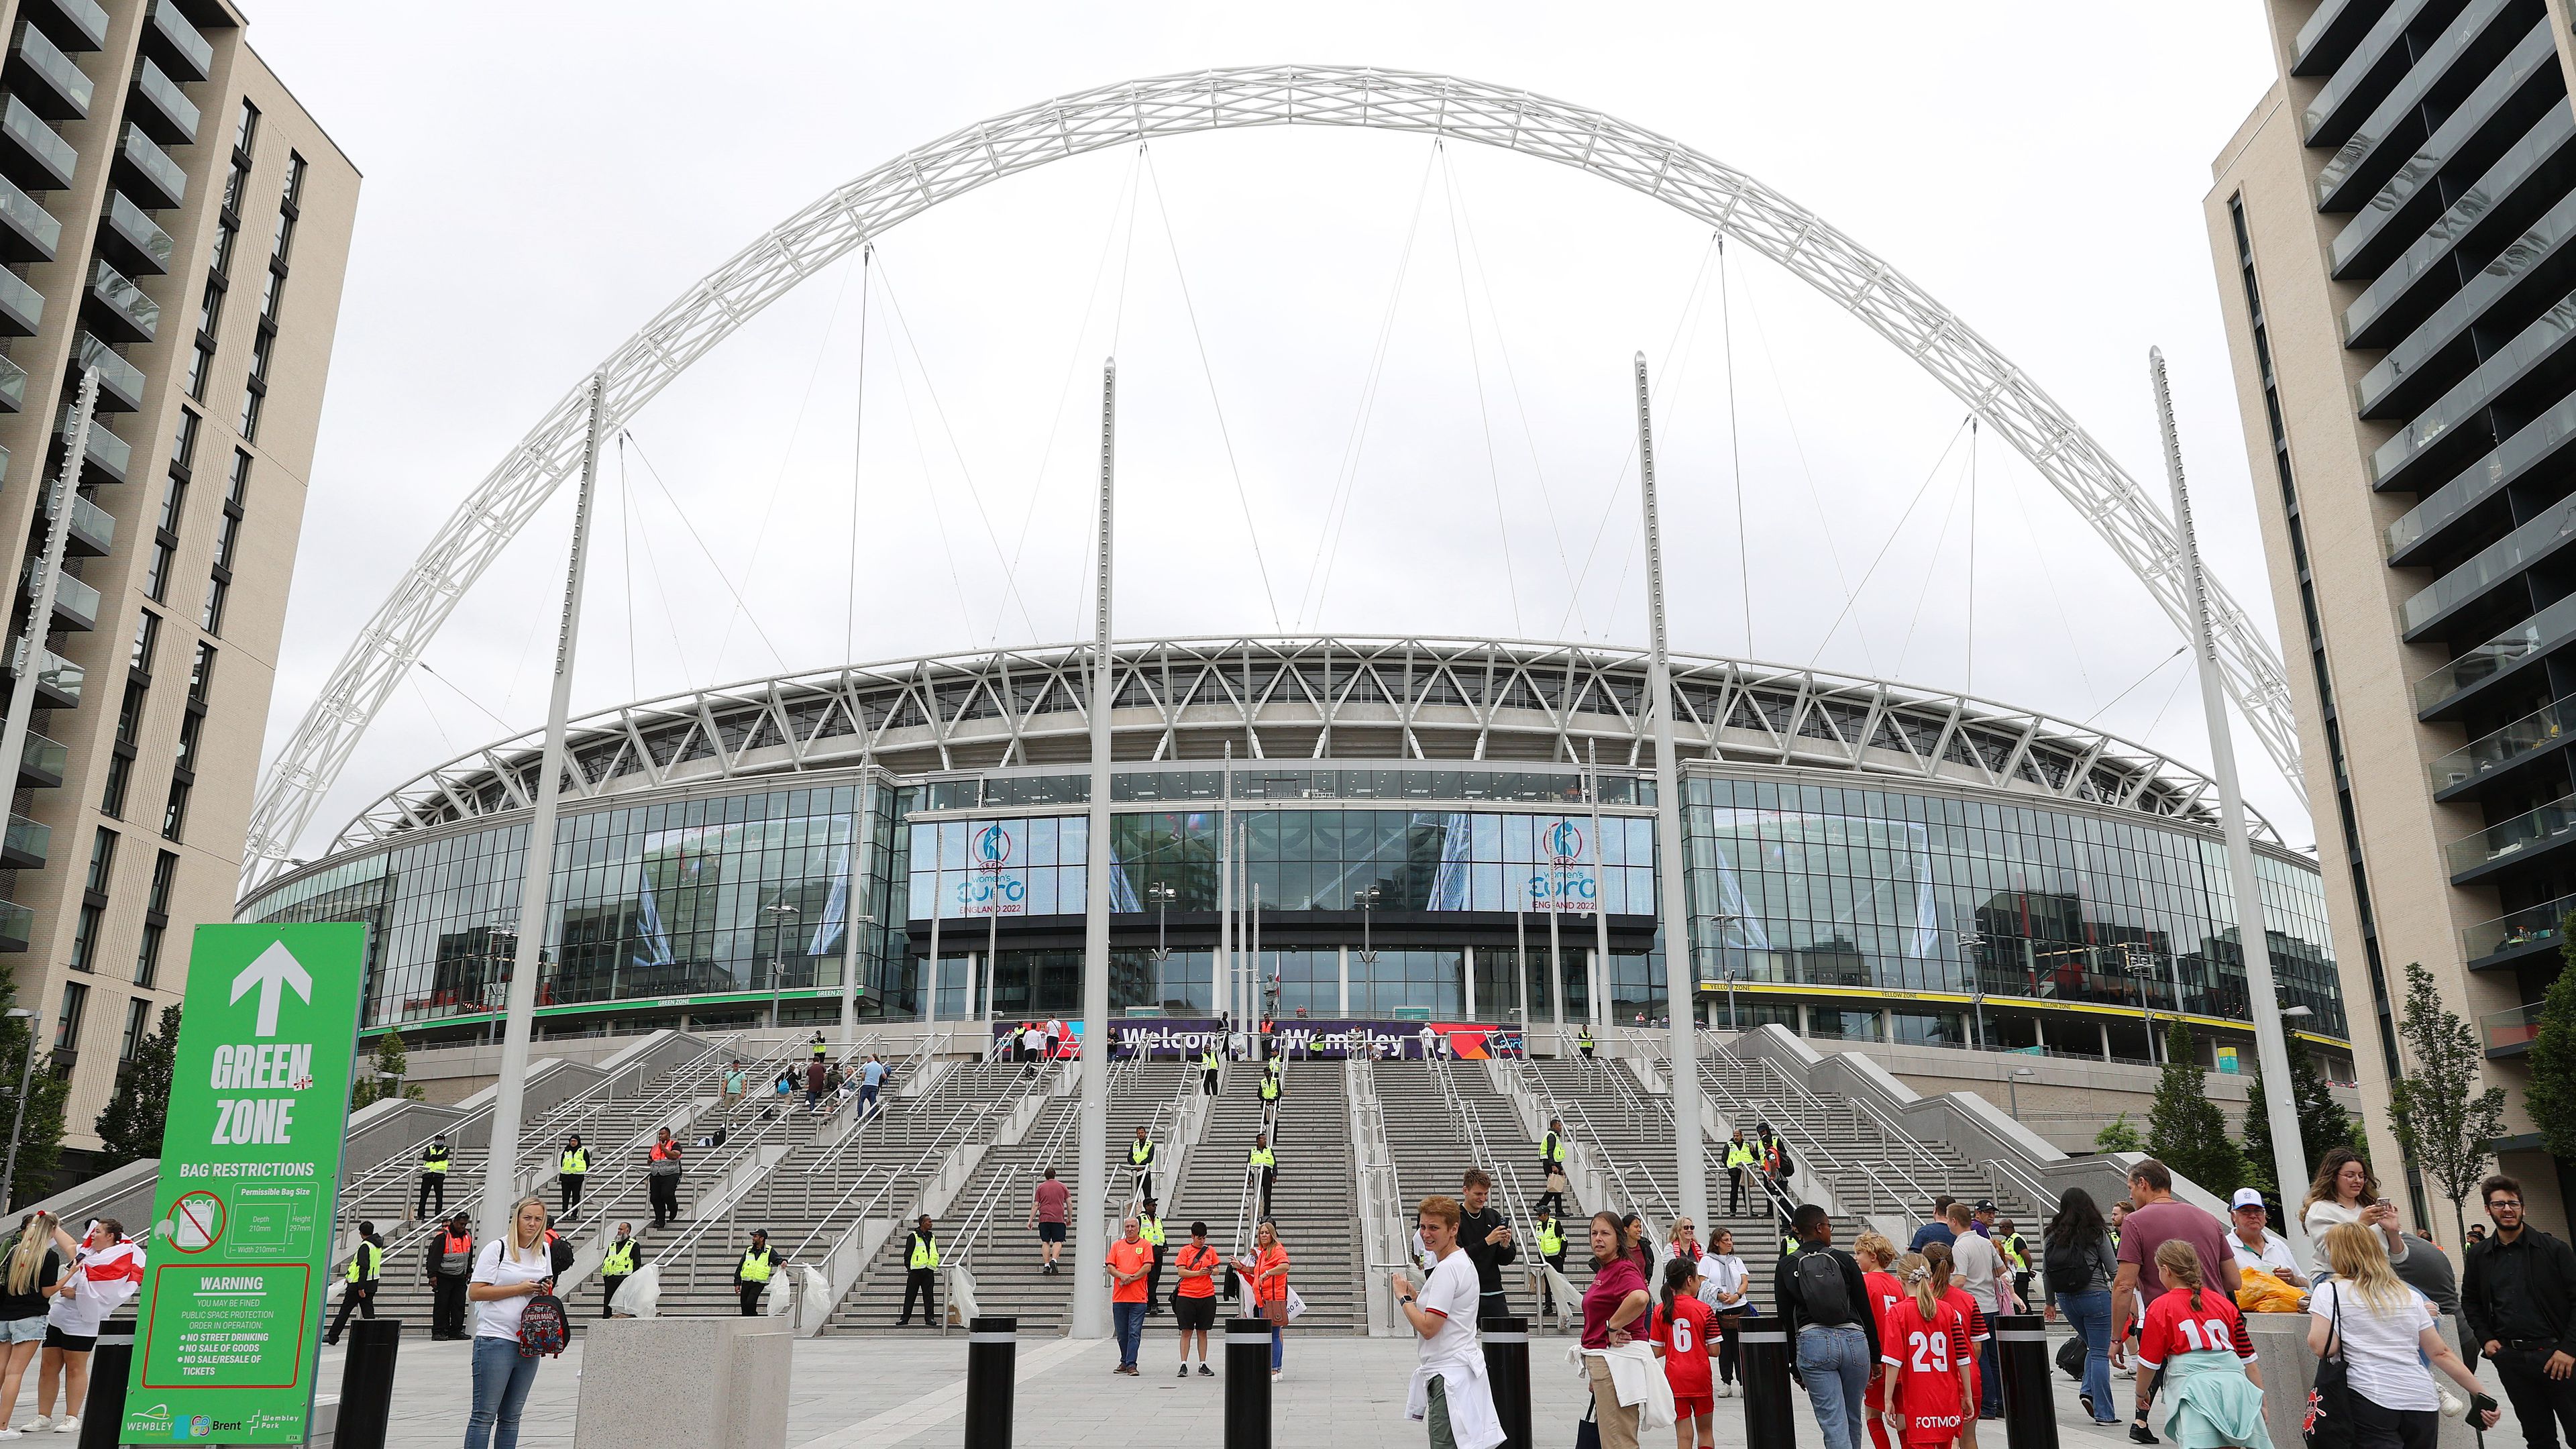 A Wembleyben is rendezhetnek mérkőzést a 2028-as Európa-bajnokságon